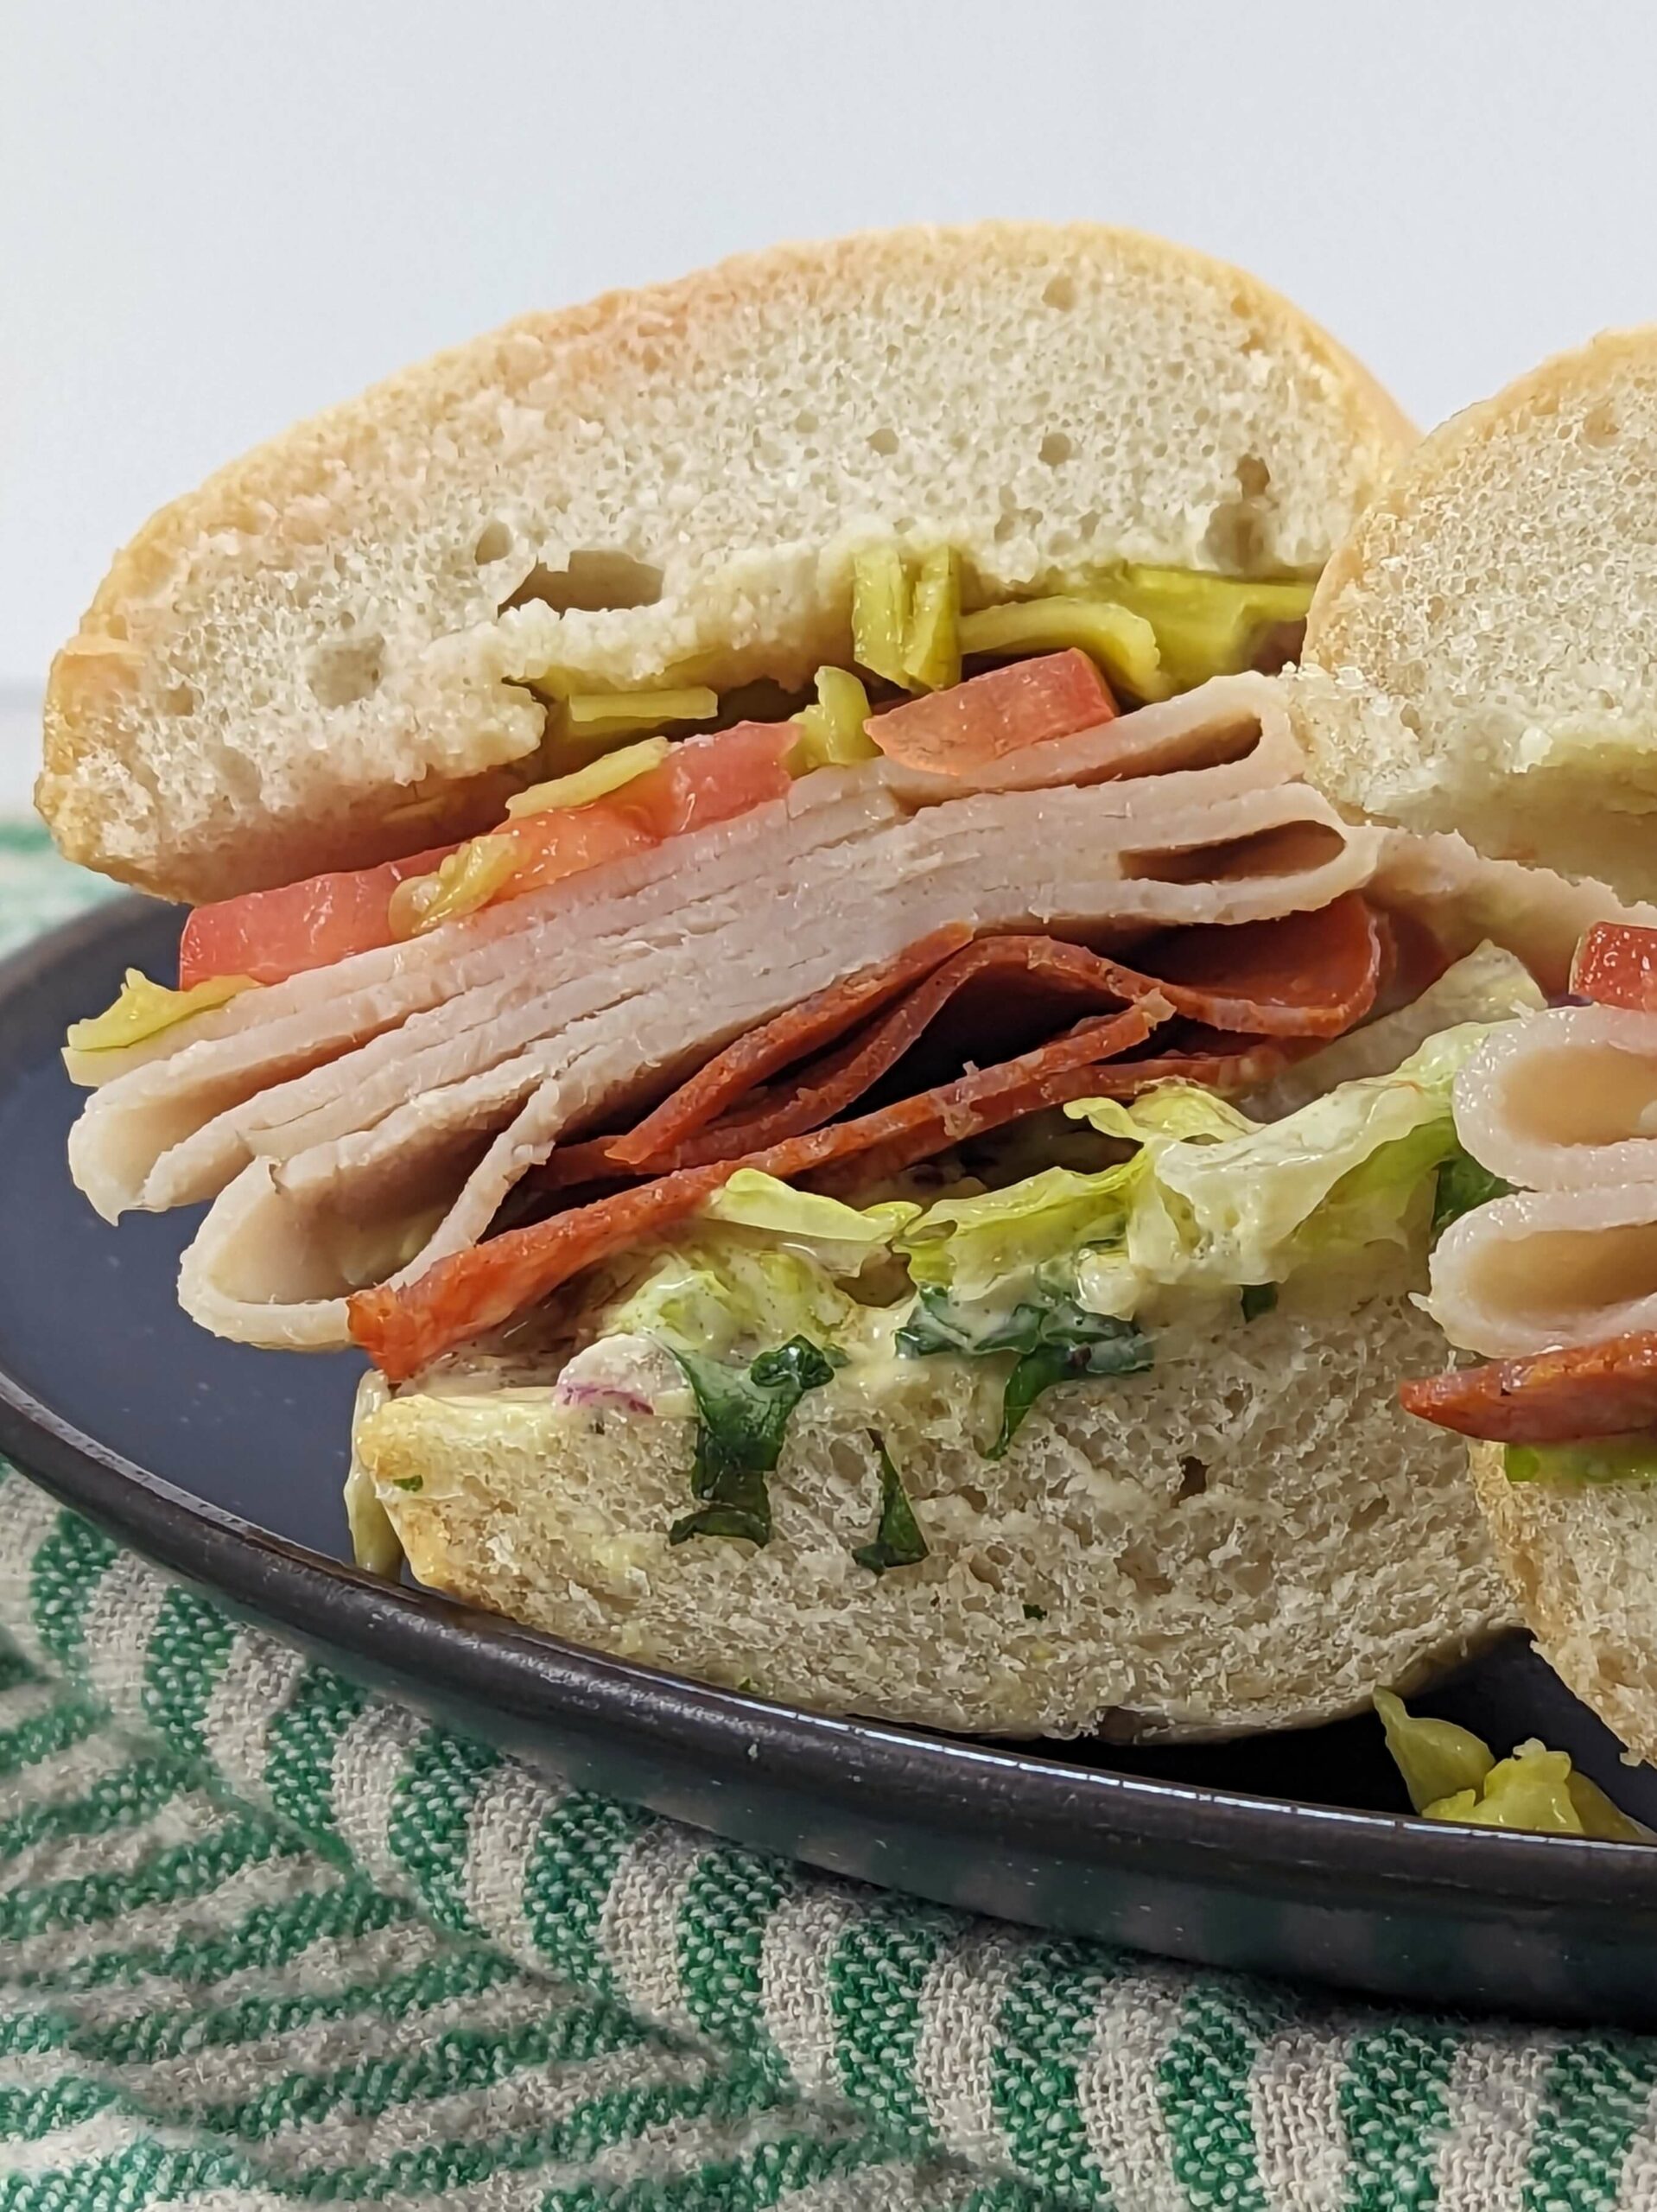 A side eye view of the sandwich cut in half.